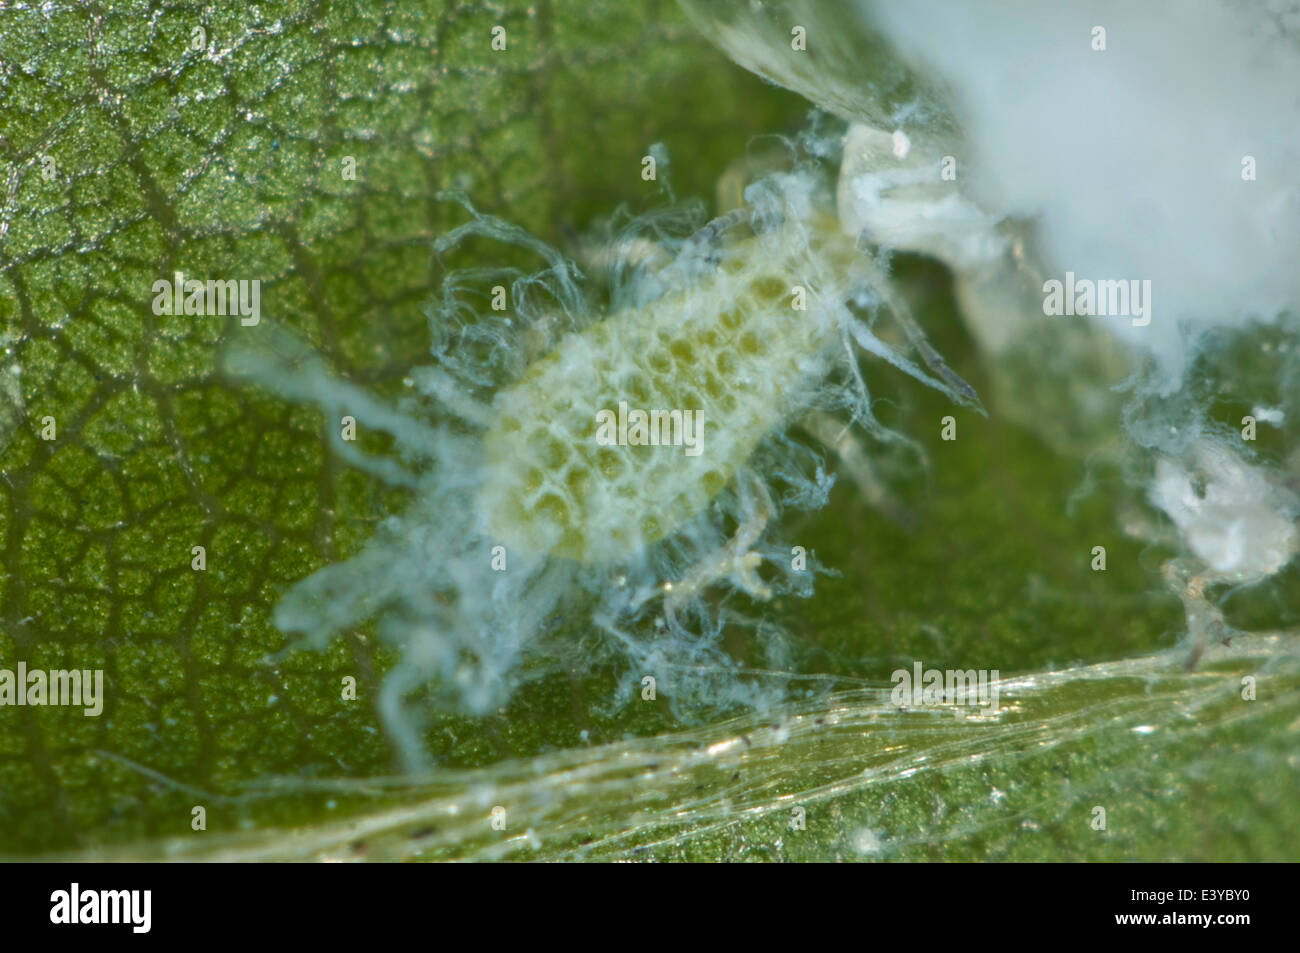 Photomicrographie d'un puceron lanigère du hêtre immatures, Phyllaphis fagi, avec formation d'extrusions cireuse Banque D'Images